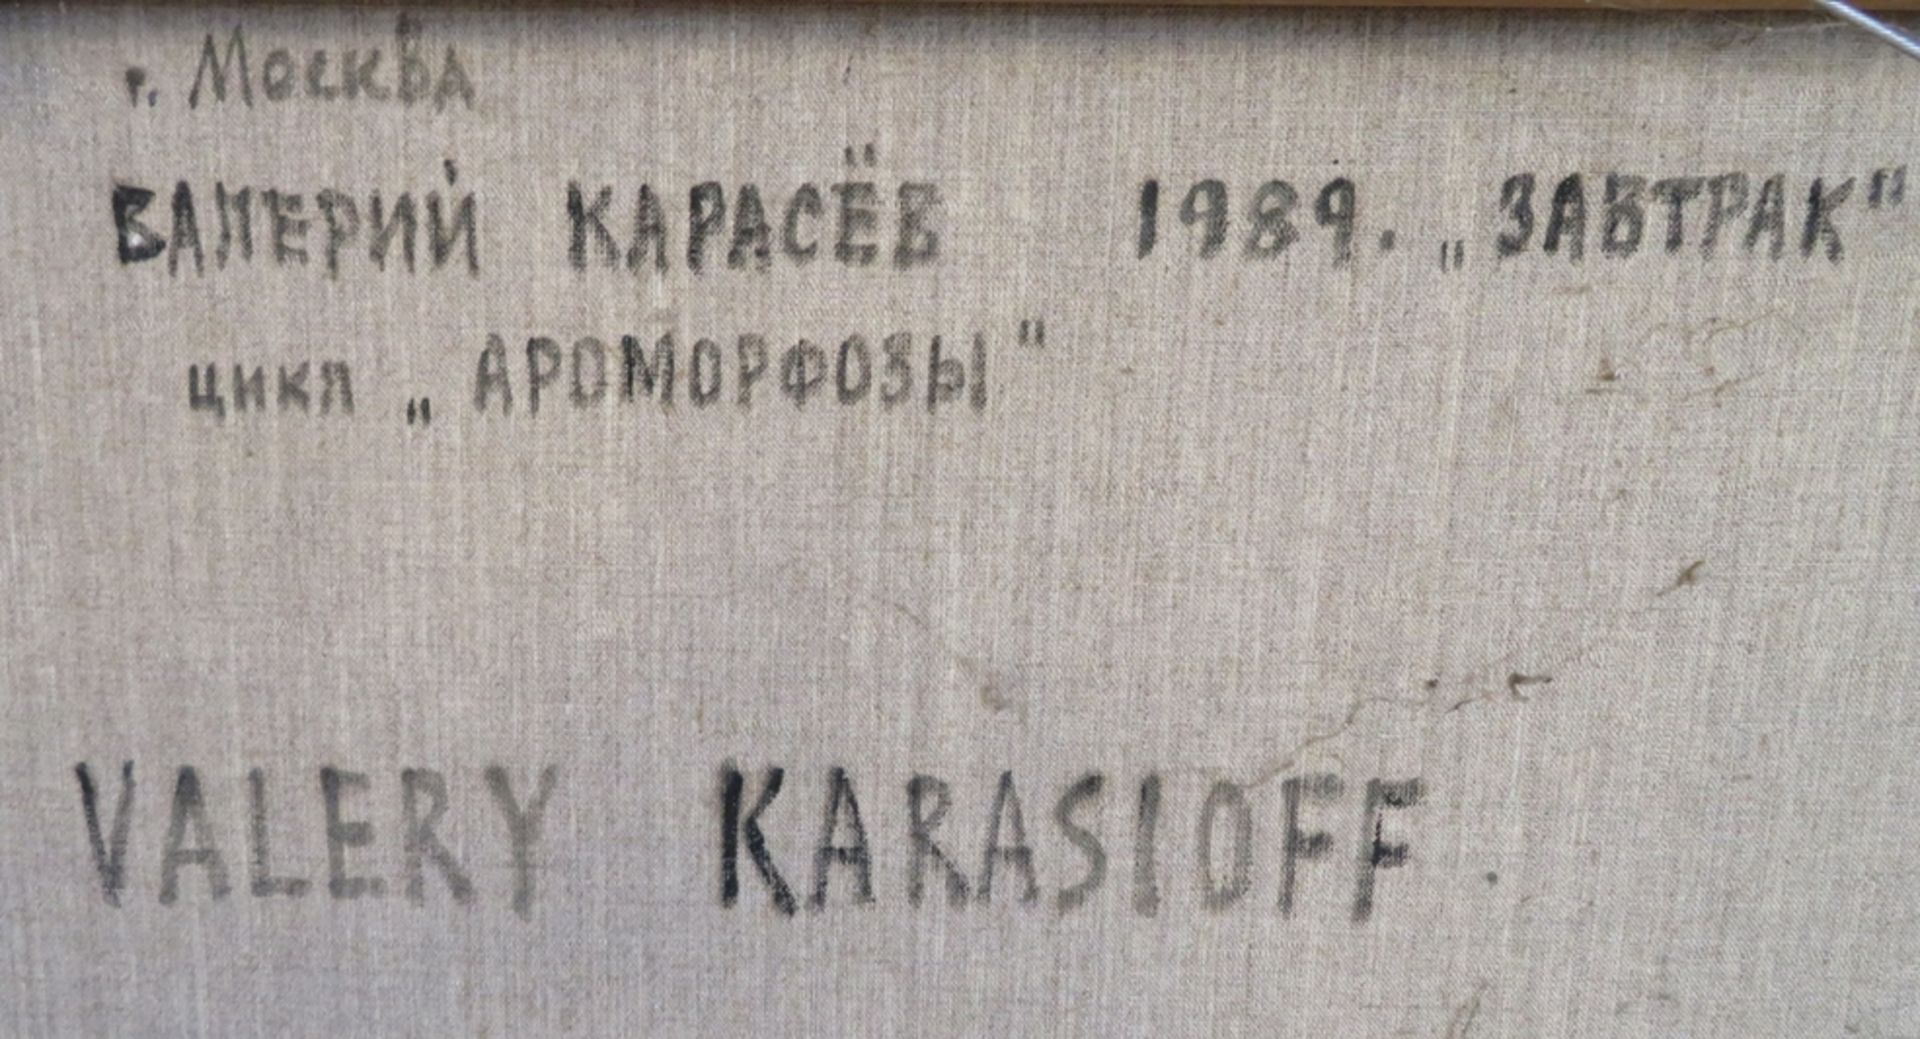 Karassioff, Valerij, *1939 Moskau, - Image 5 of 5